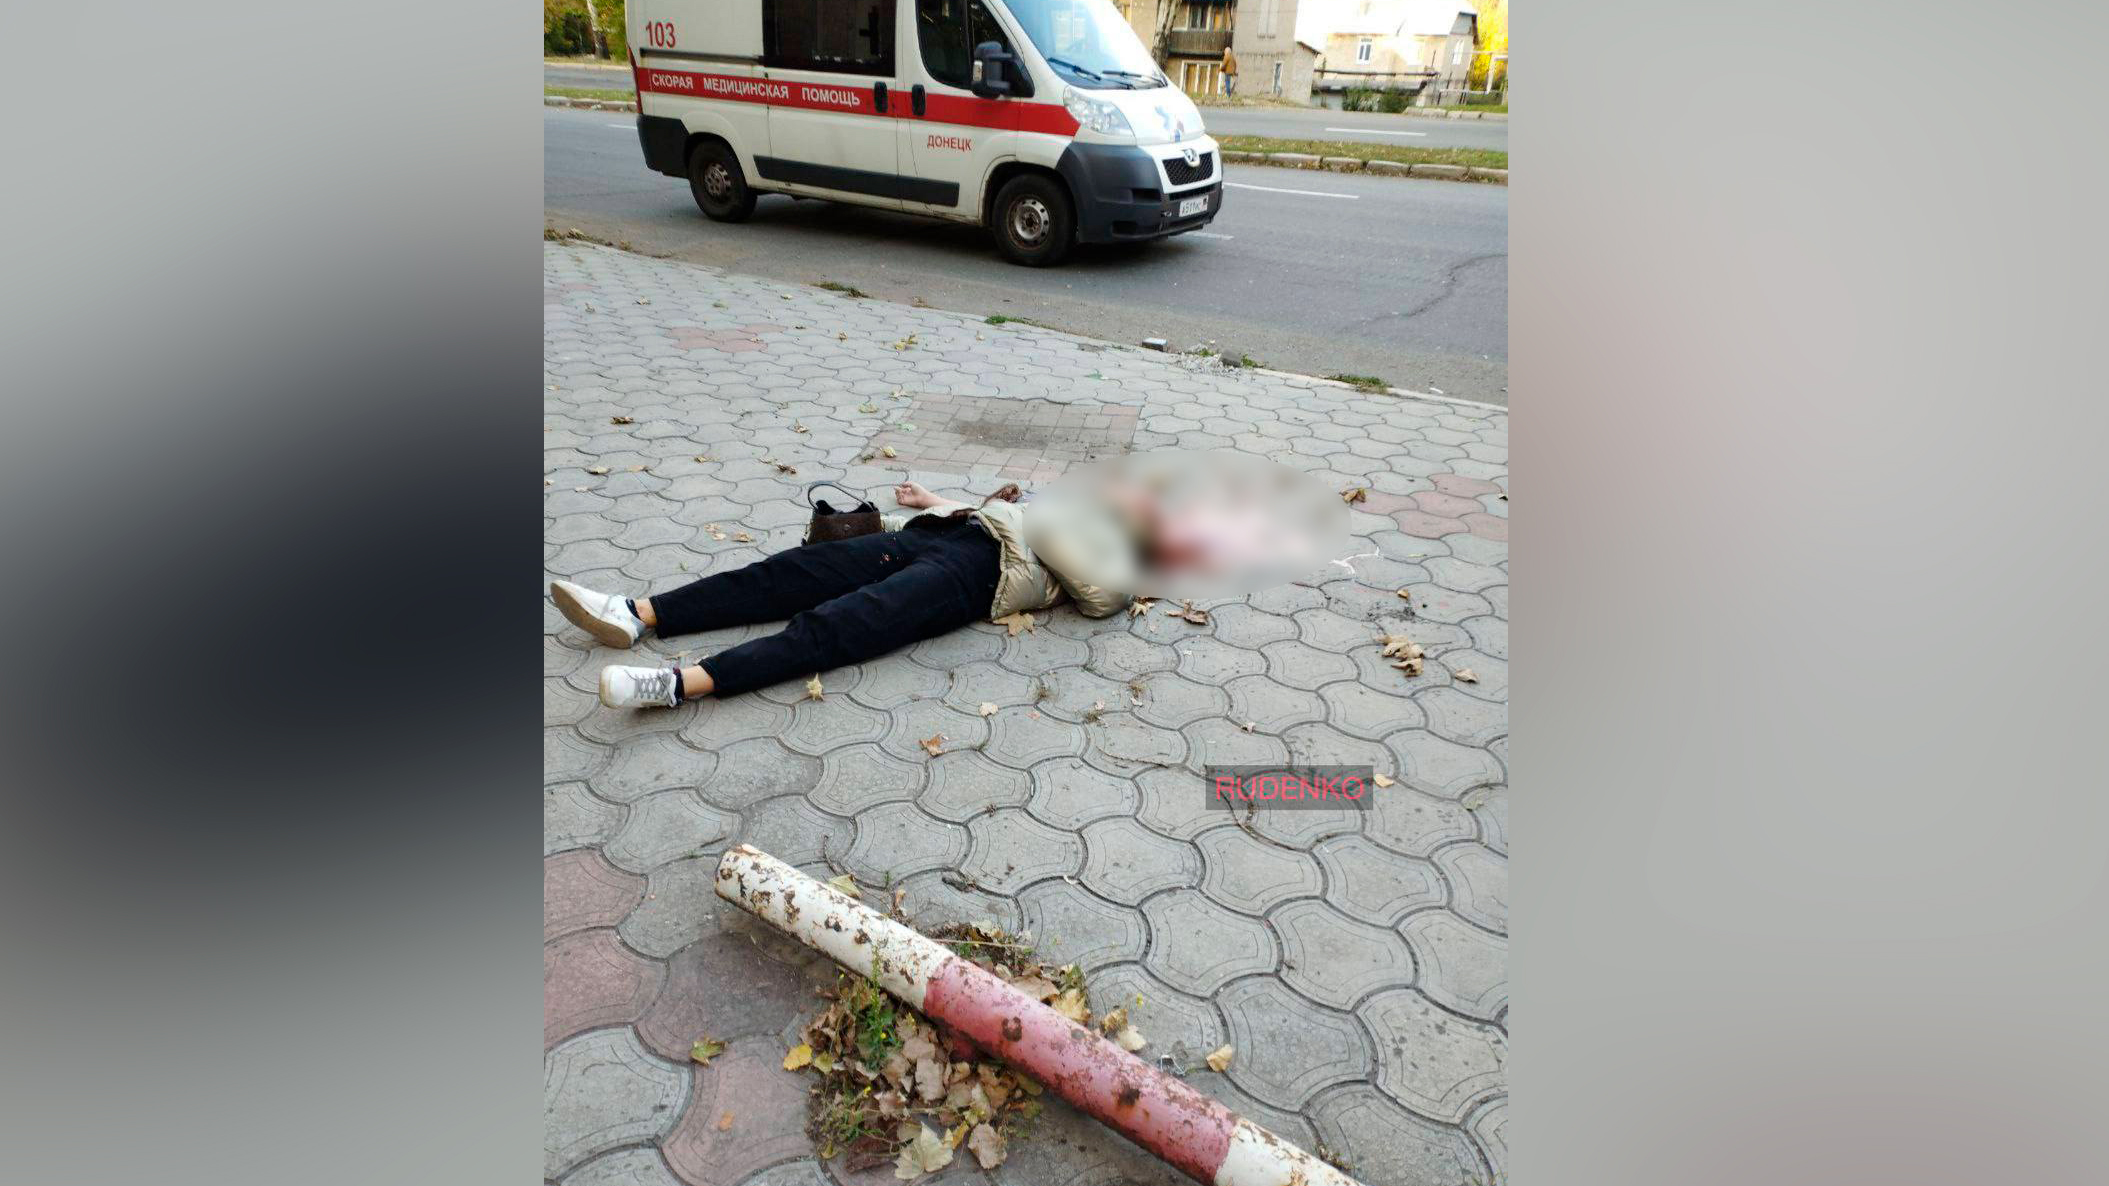 Погибшая в результате обстрела ВСУ в Донецке. Фото © Телеграм-канал "Репортёр Руденко V"